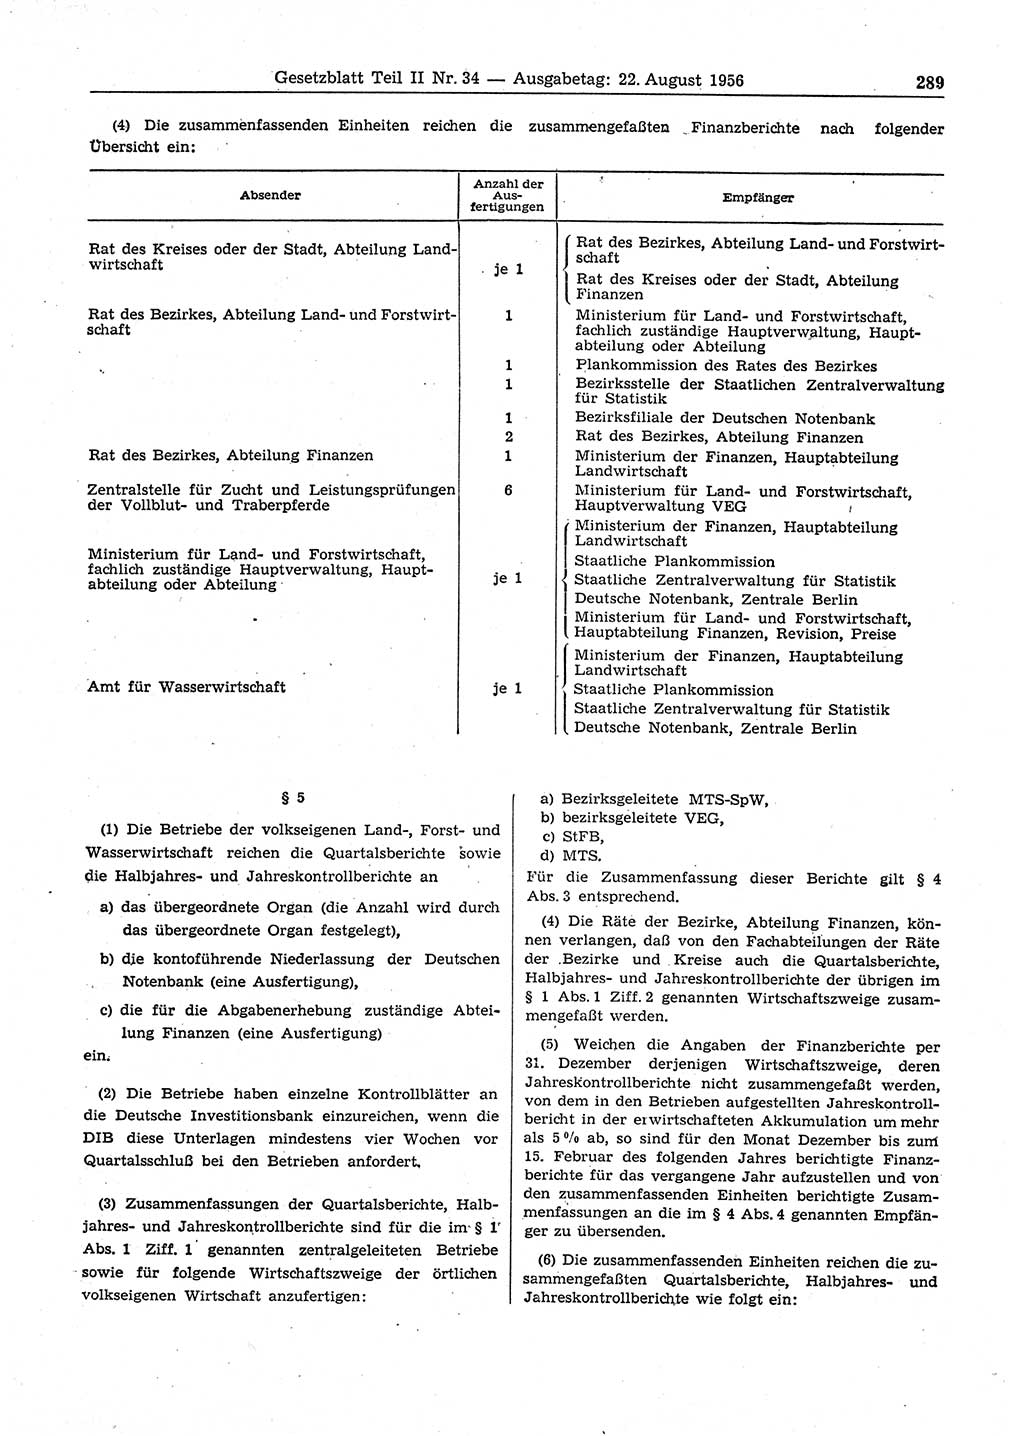 Gesetzblatt (GBl.) der Deutschen Demokratischen Republik (DDR) Teil ⅠⅠ 1956, Seite 289 (GBl. DDR ⅠⅠ 1956, S. 289)